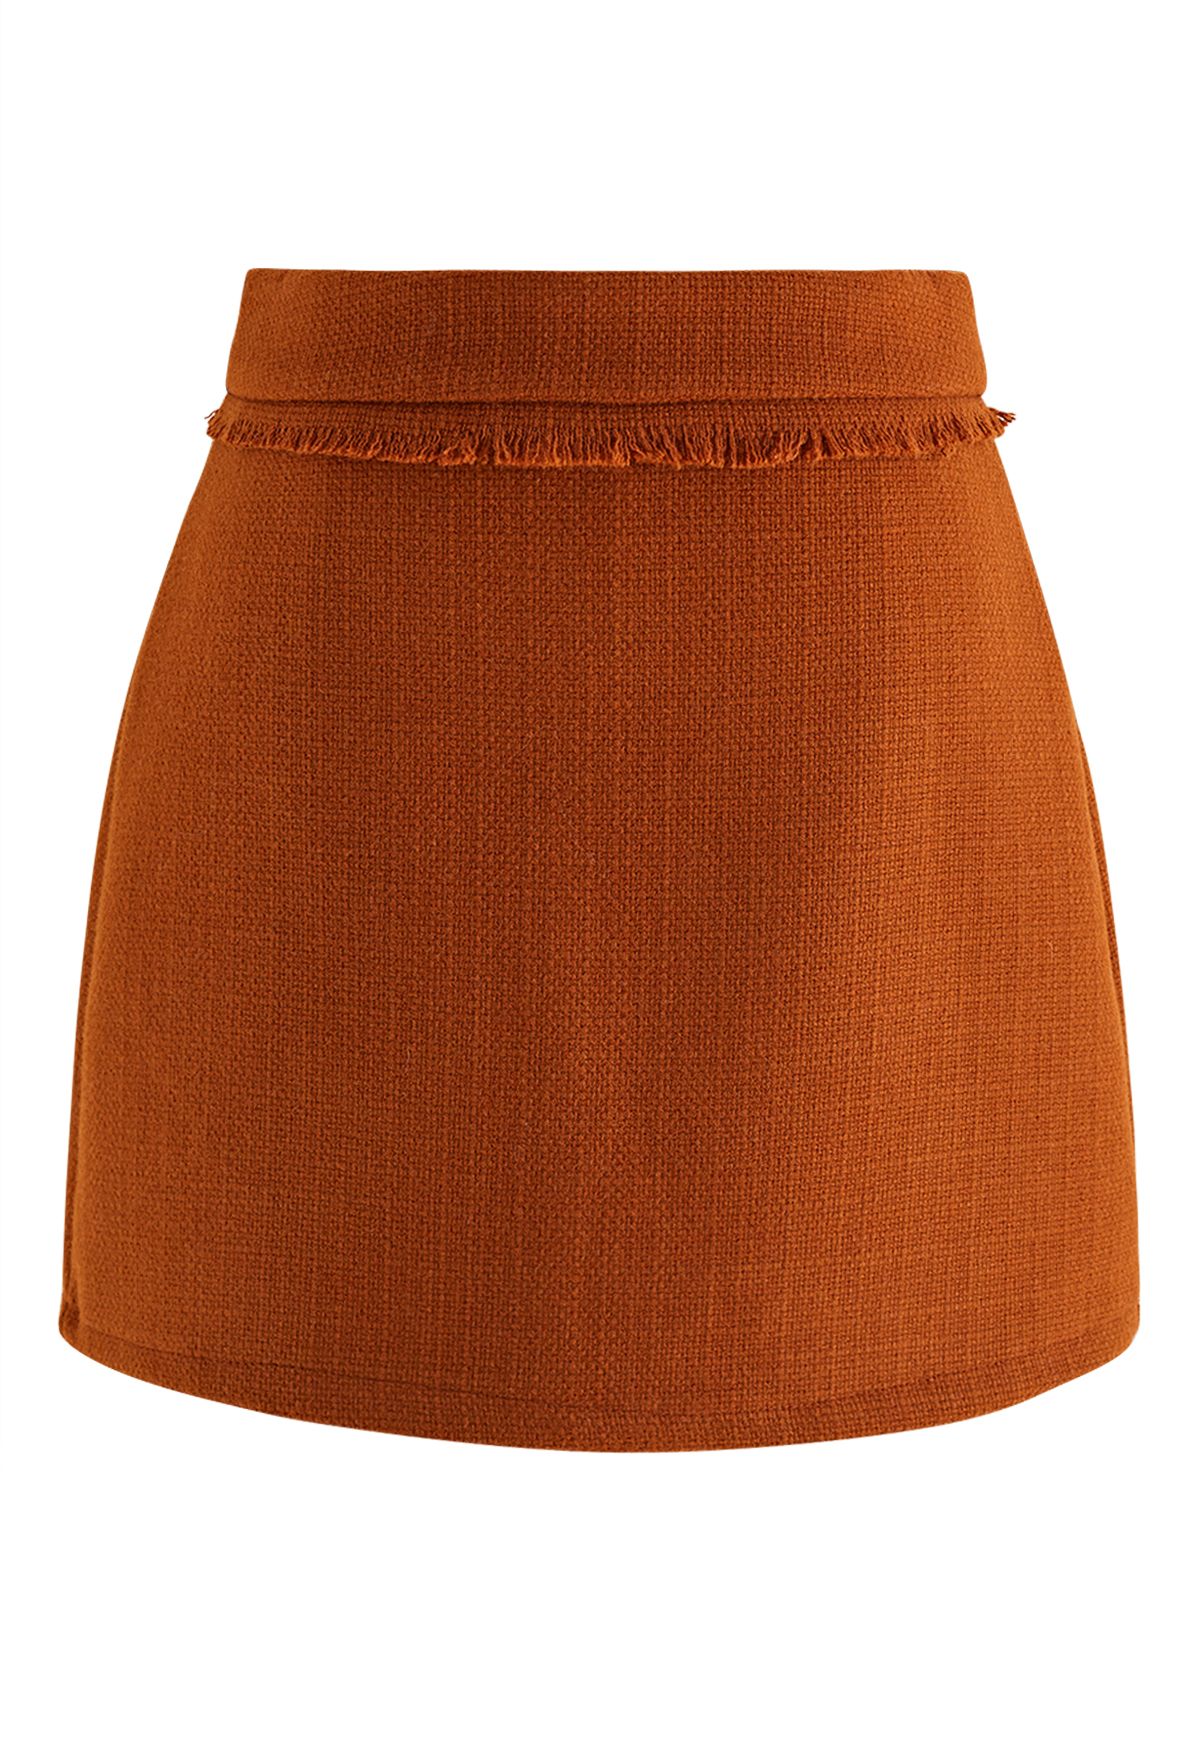 تنورة قصيرة من التويد مزينة بشراشيب باللون البرتقالي